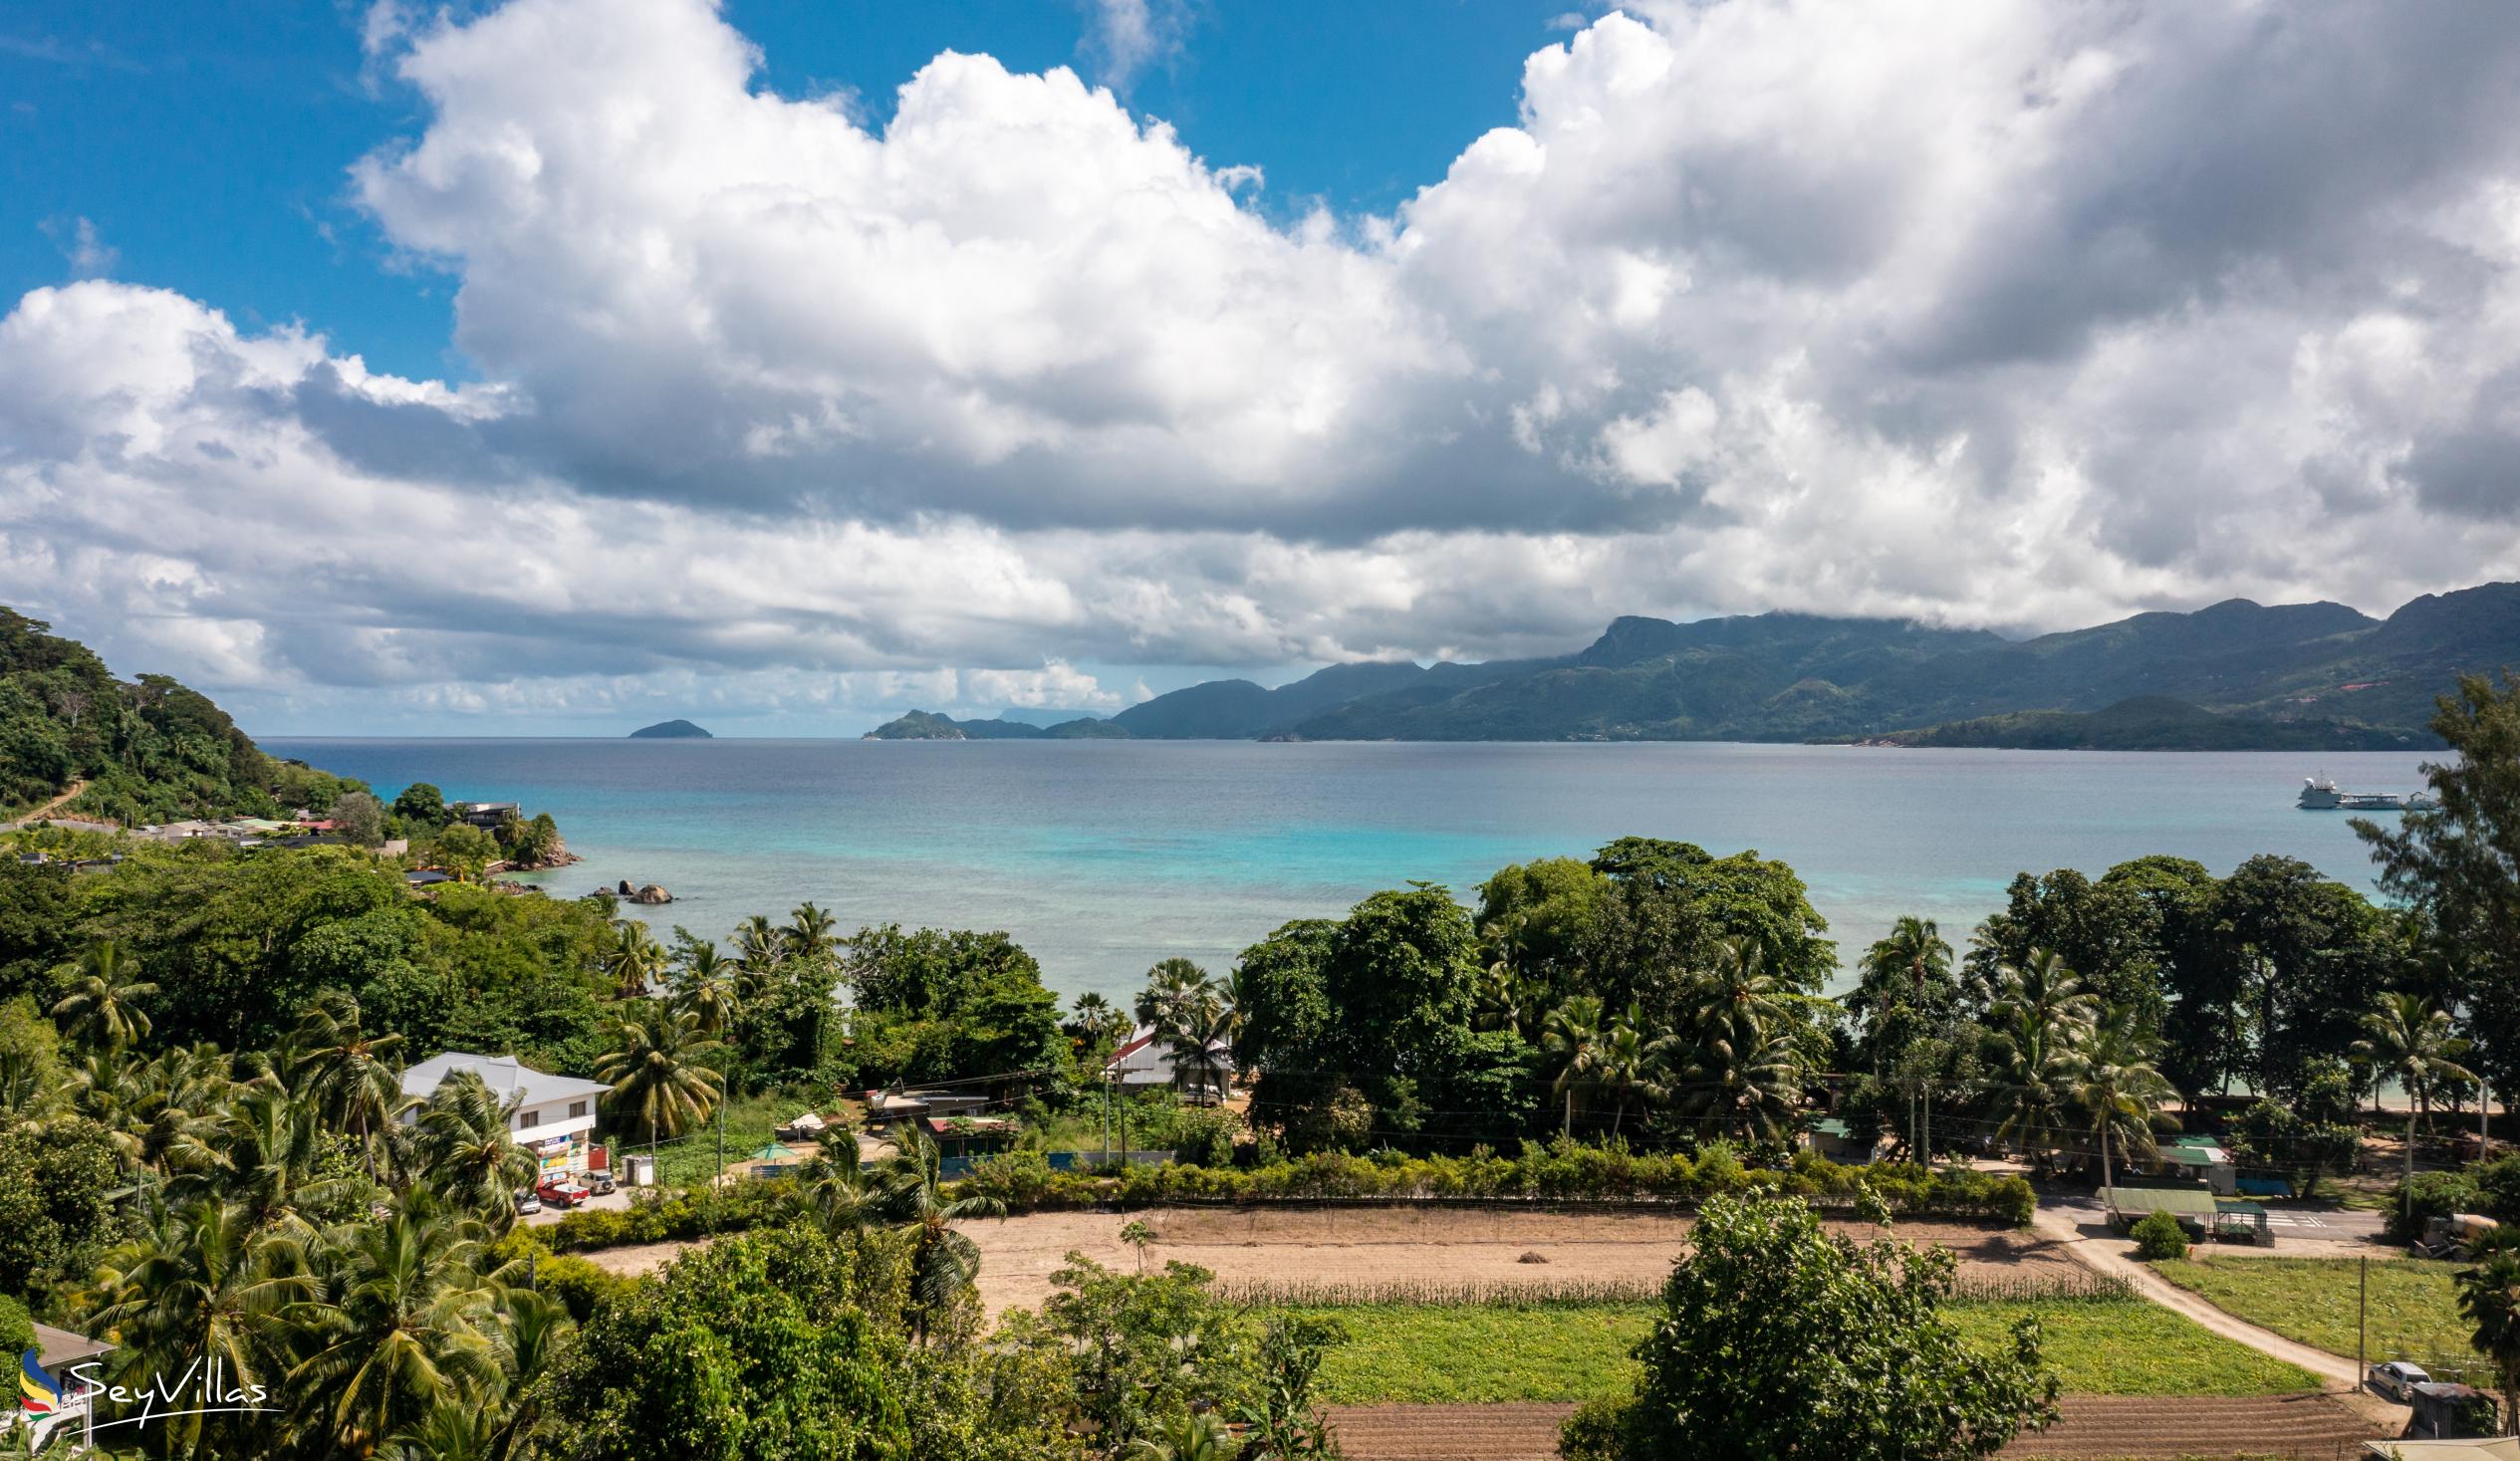 Photo 14: Paul's Residence - Location - Mahé (Seychelles)